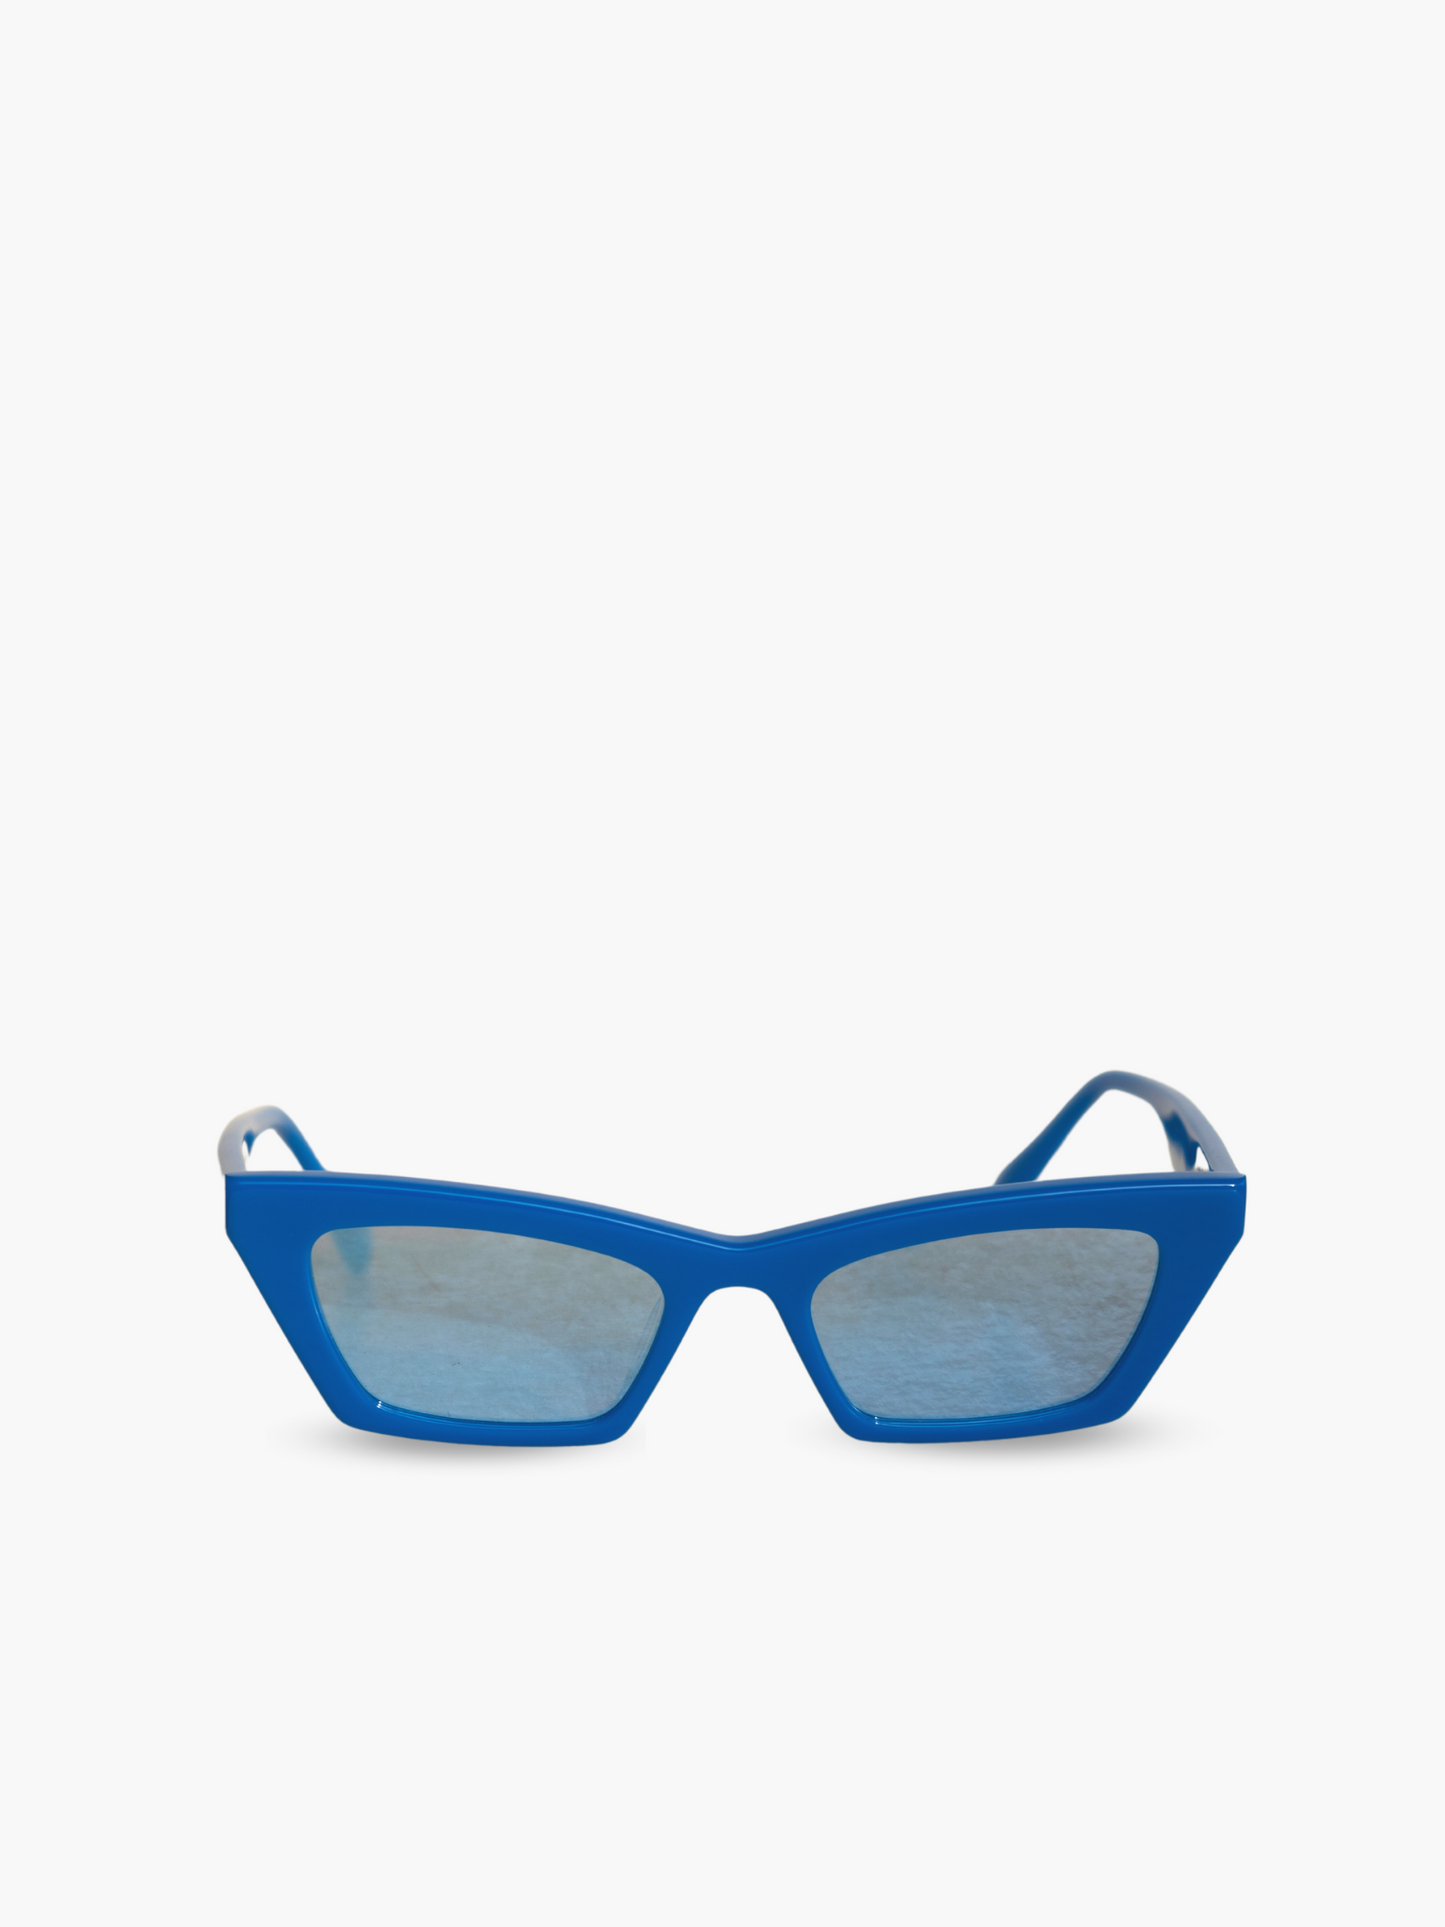 Occhiali da sole Modello Bold Neon Electric Blue: montatura color blue elettrico con lenti specchiate con riflesso celeste. Unisex e adatto alla maggior parte delle forme del viso. Le lenti sono antiriflesso e con protezione UV.